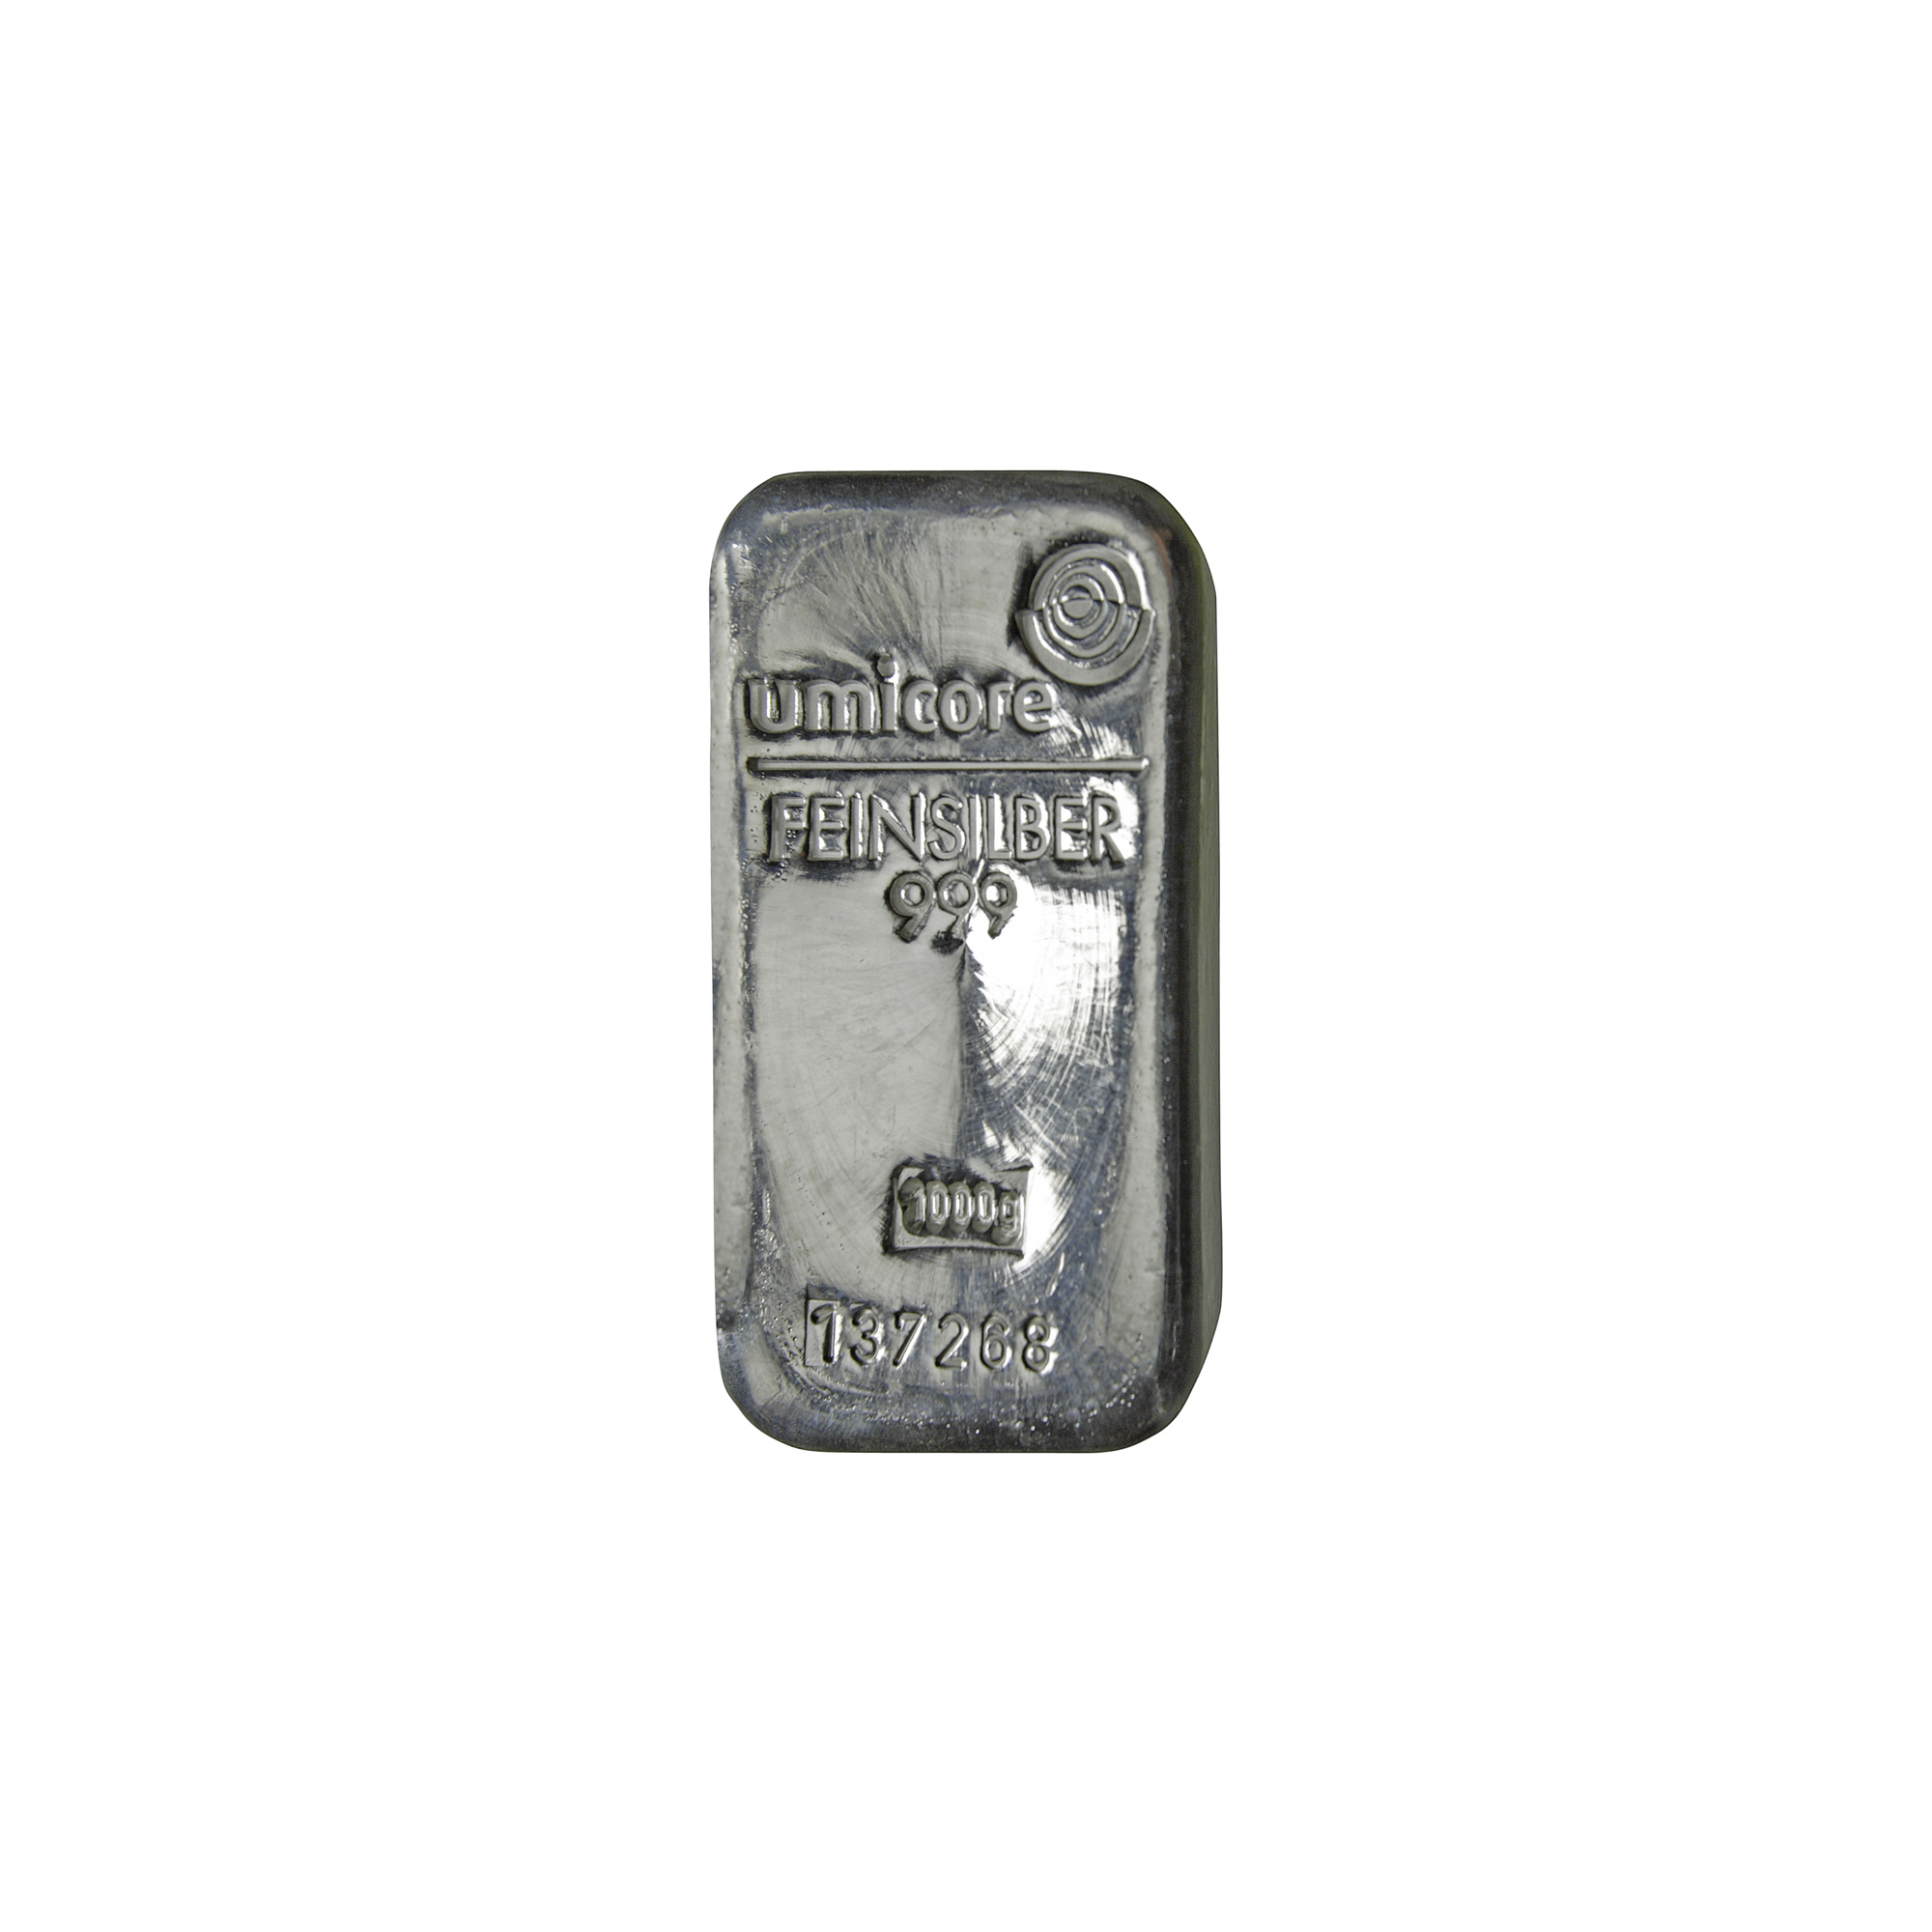 veiligheid Aardrijkskunde Mitt 1 kilo zilver- Aankoop en verkoop zilverprijs - beleggen in zilver